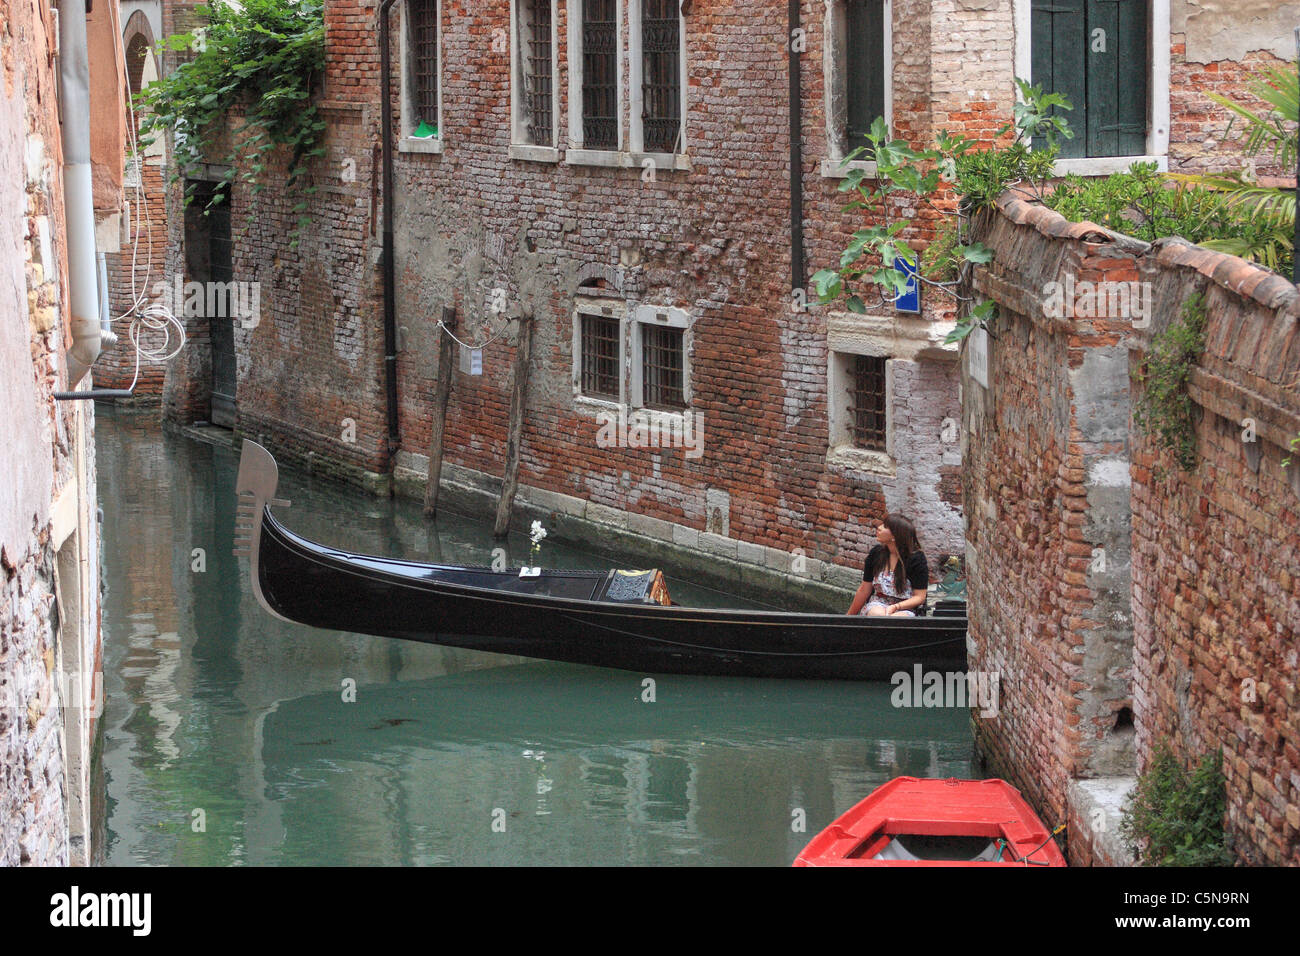 Gondola ride at canal in Venice, Italy Stock Photo